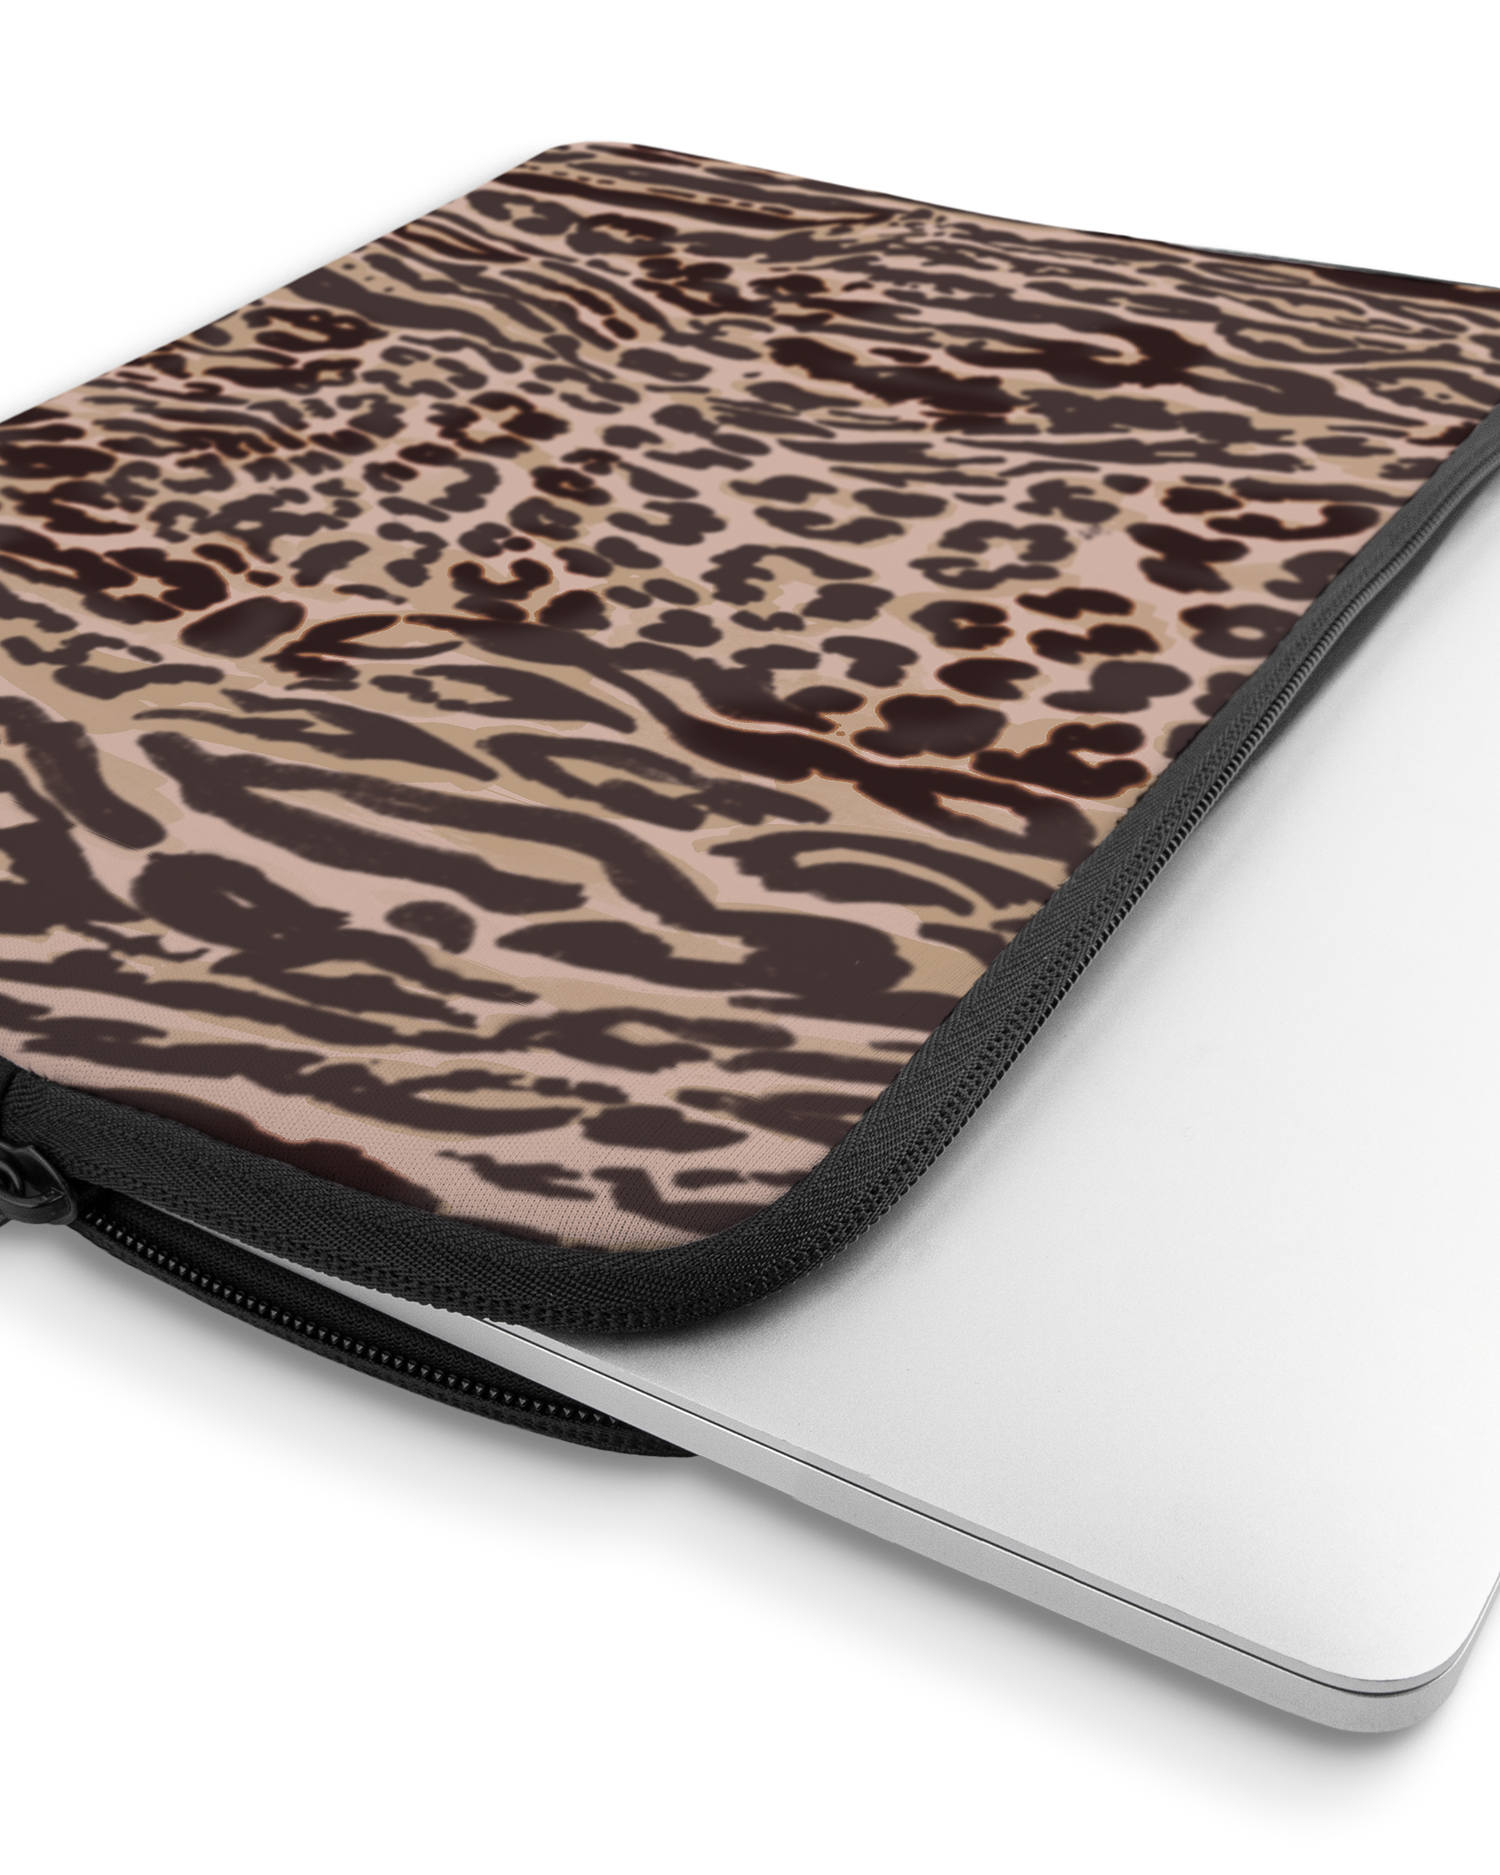 Animal Skin Tough Love Laptophülle 13 Zoll mit Gerät im Inneren